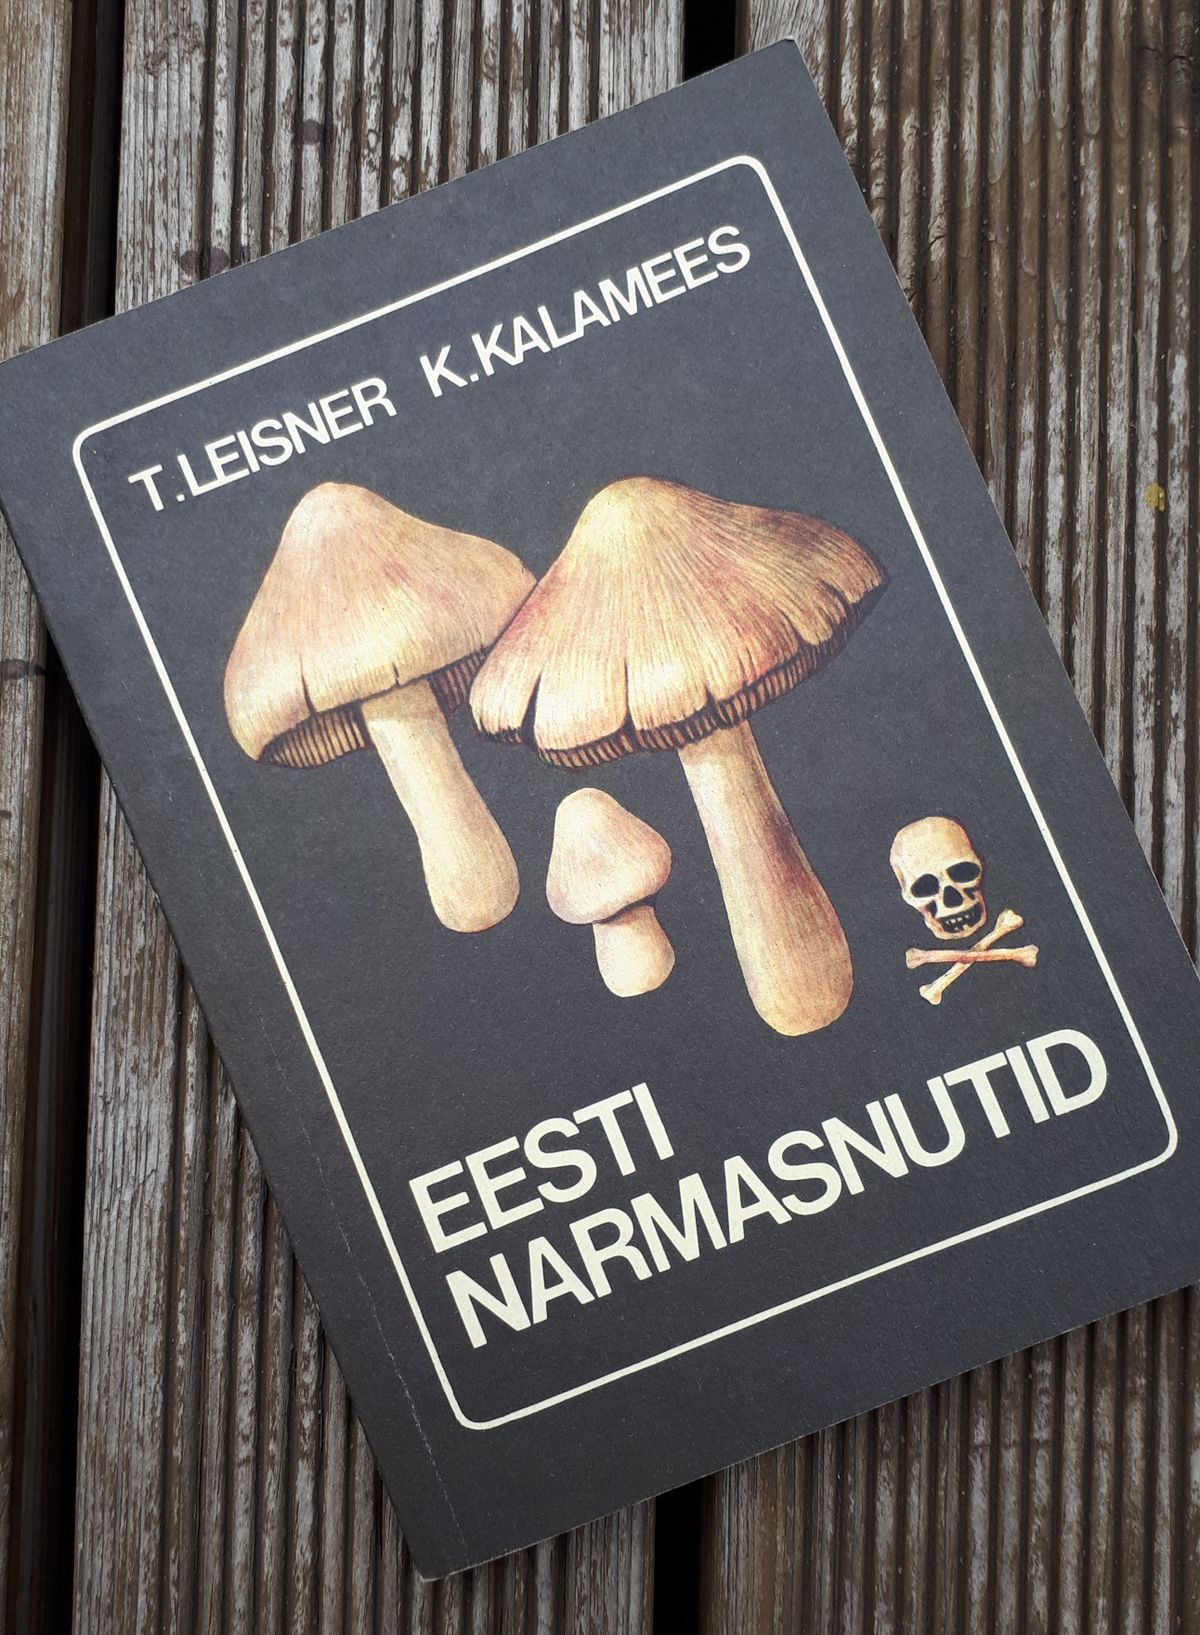 Narmasnutid on eluohtlikud! Eesti narmasnutid, T. Leisner & K. Kalamees, Tallinn: Valgus, 1987